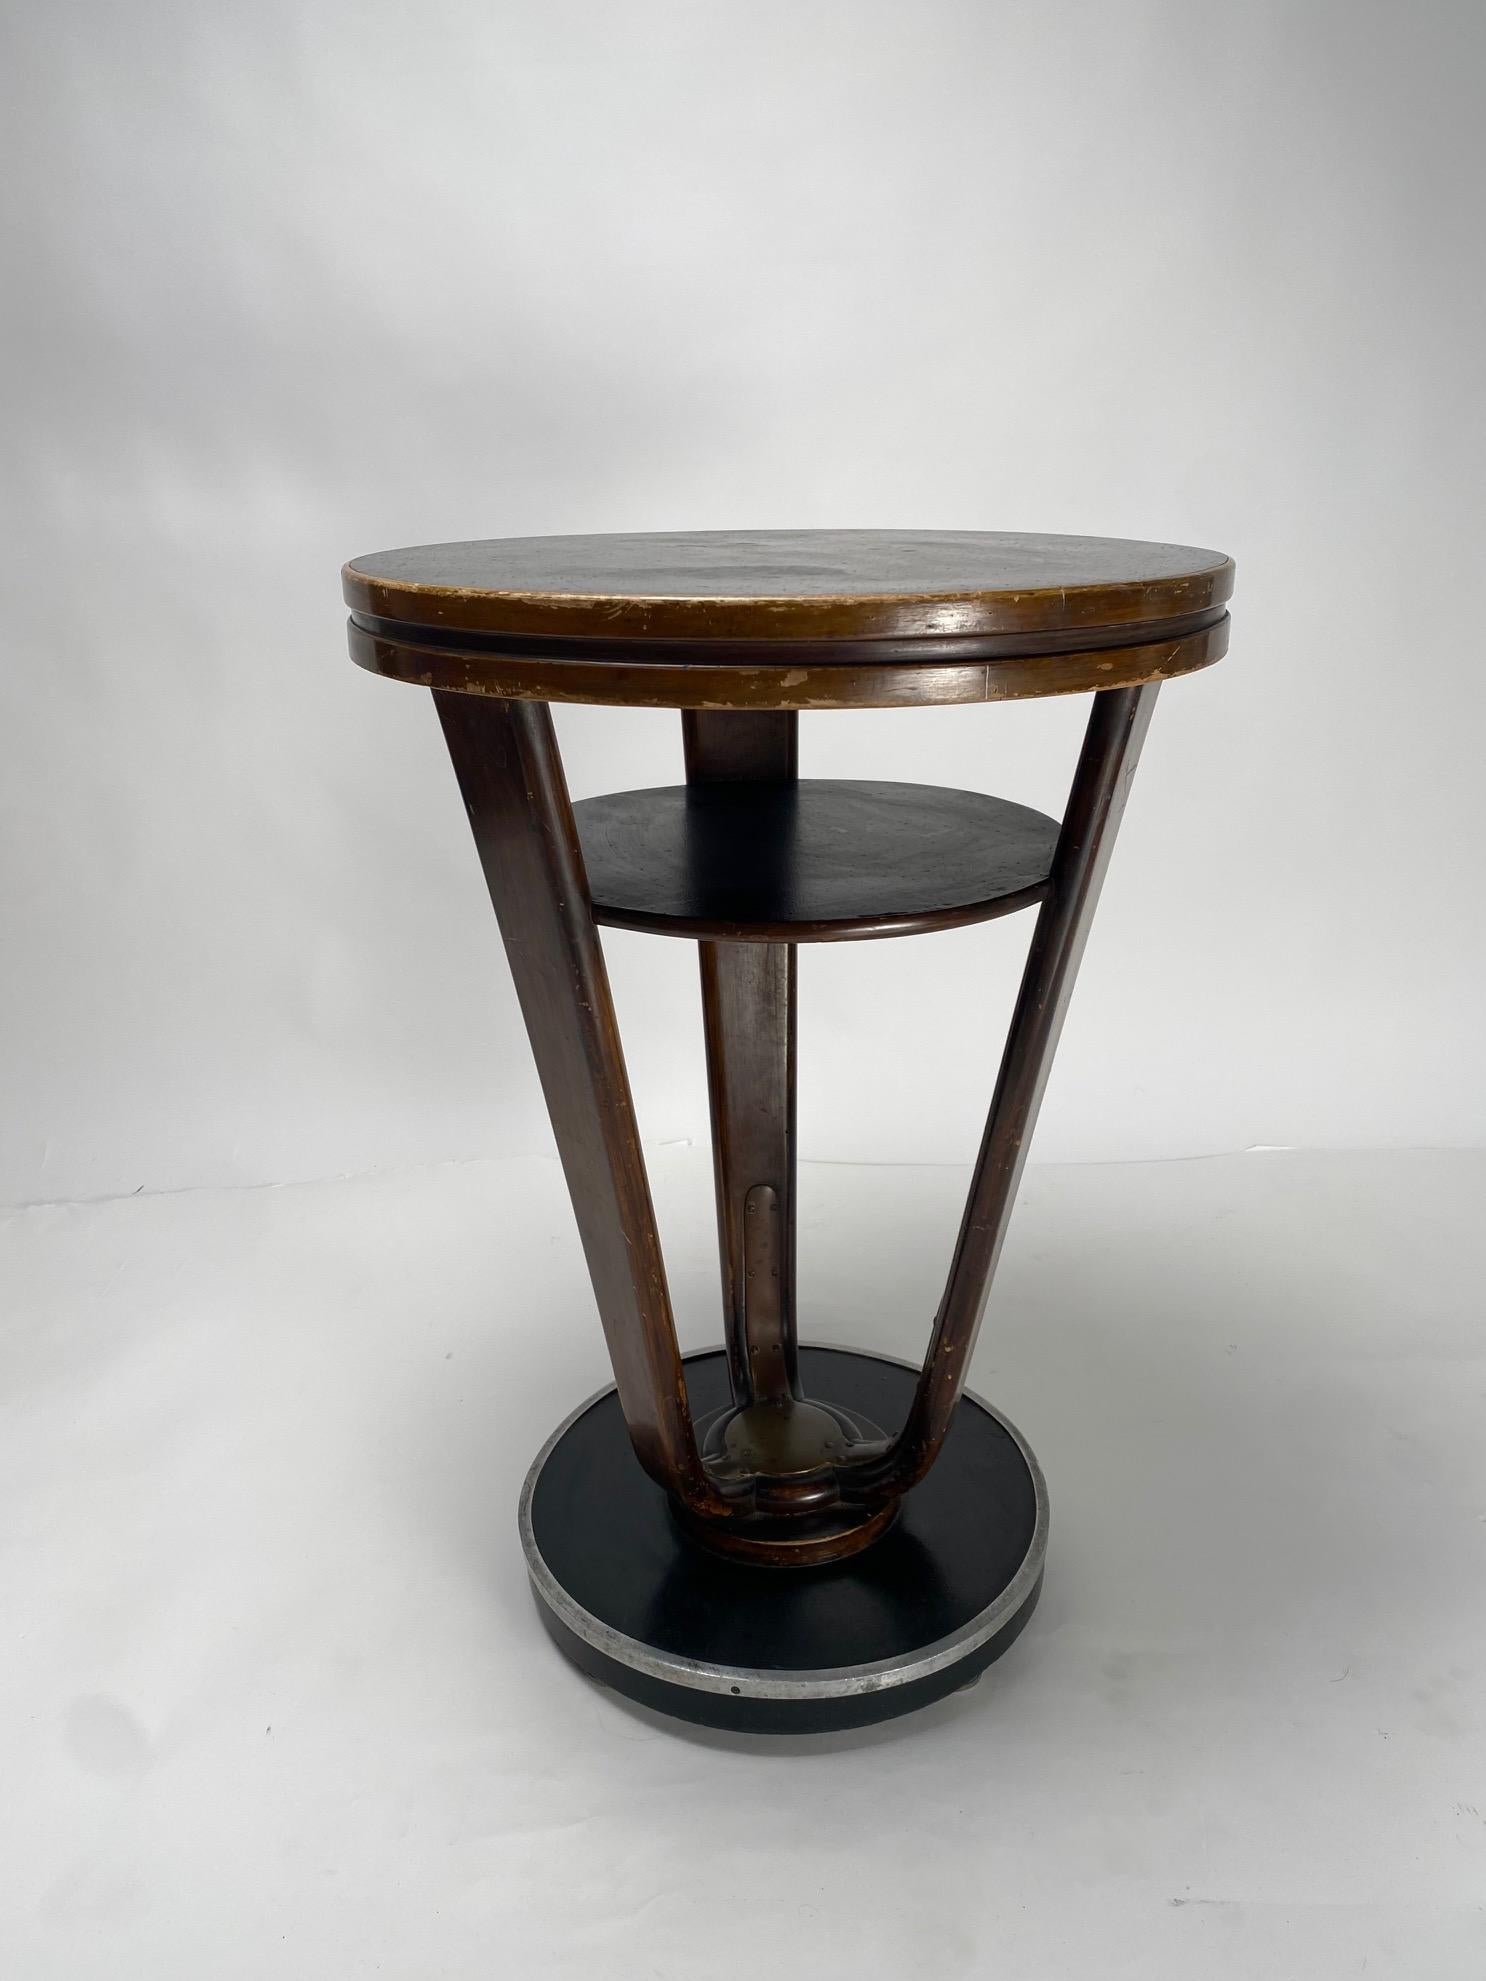 Importante table basse ronde Art Déco en bois et métal fabriquée en Italie dans les années 1930.

Il s'agit d'une table basse se référant à l'important mouvement artistique appelé 